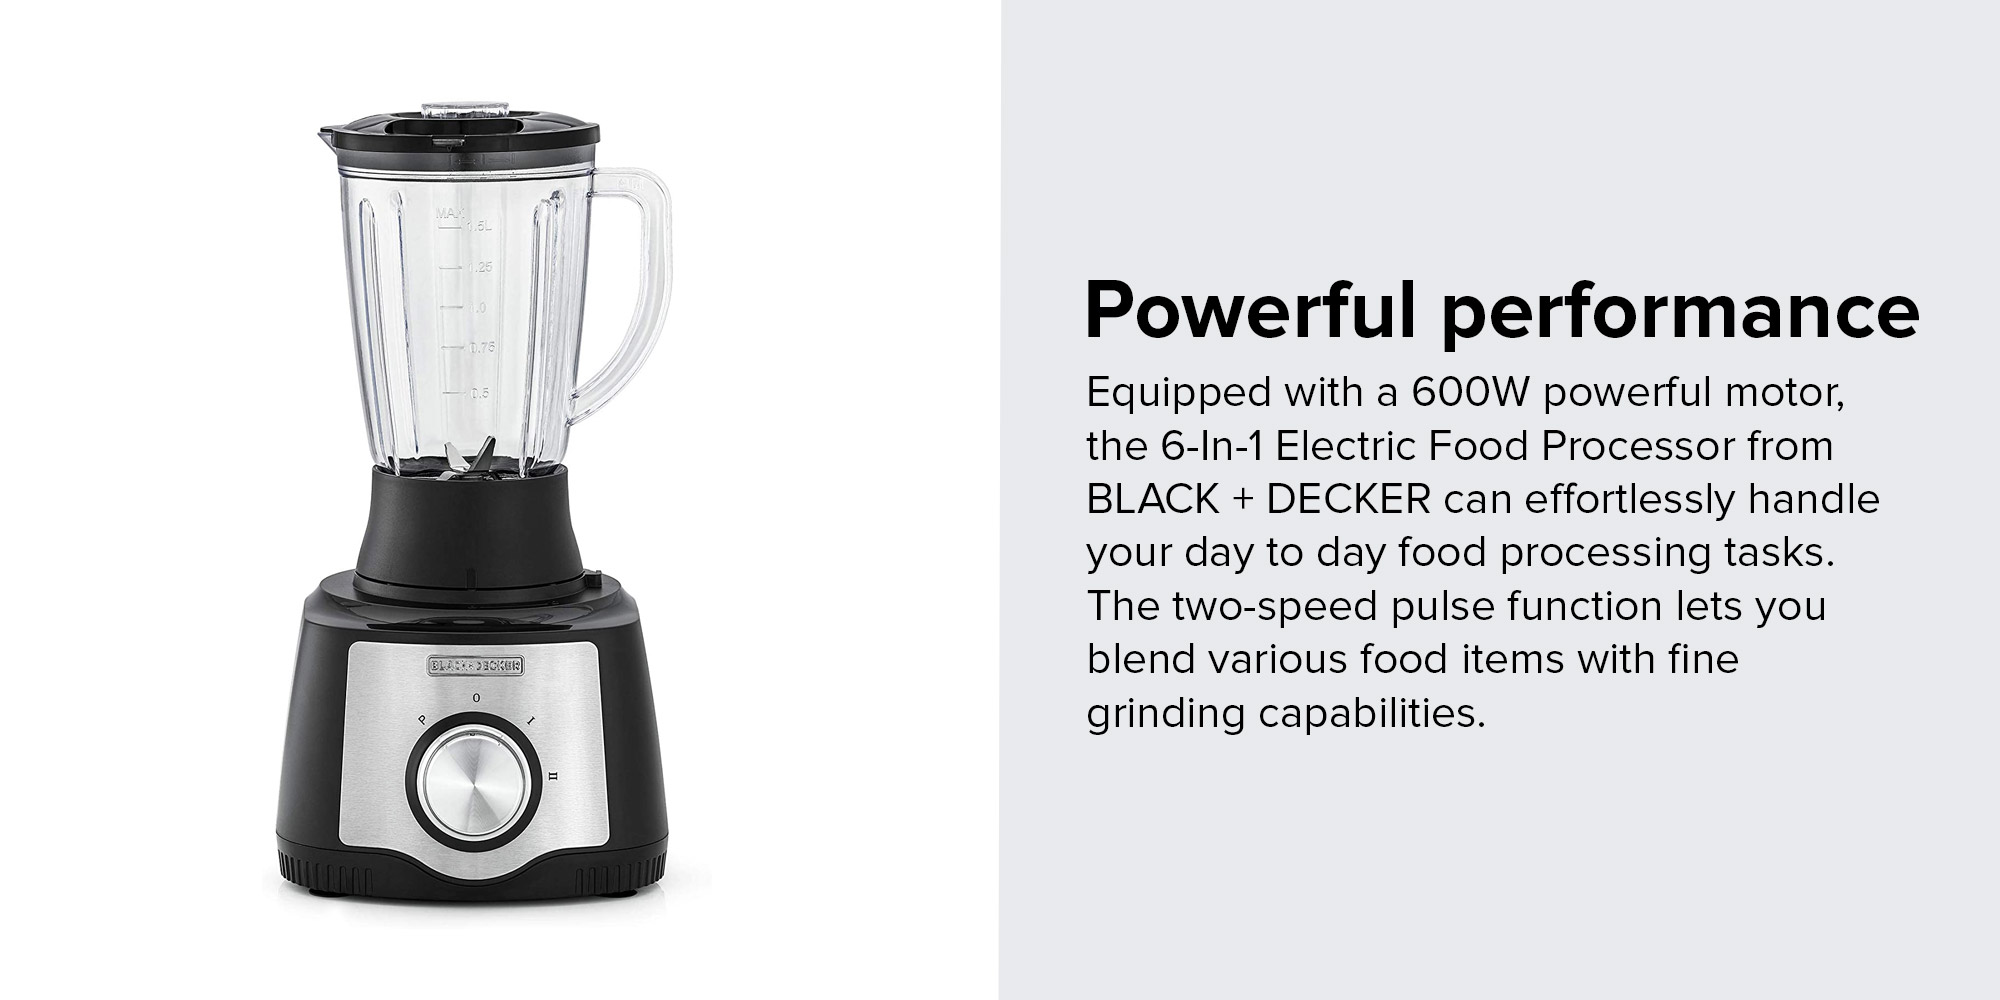 Black+Decker FX650-B5 | Food processor